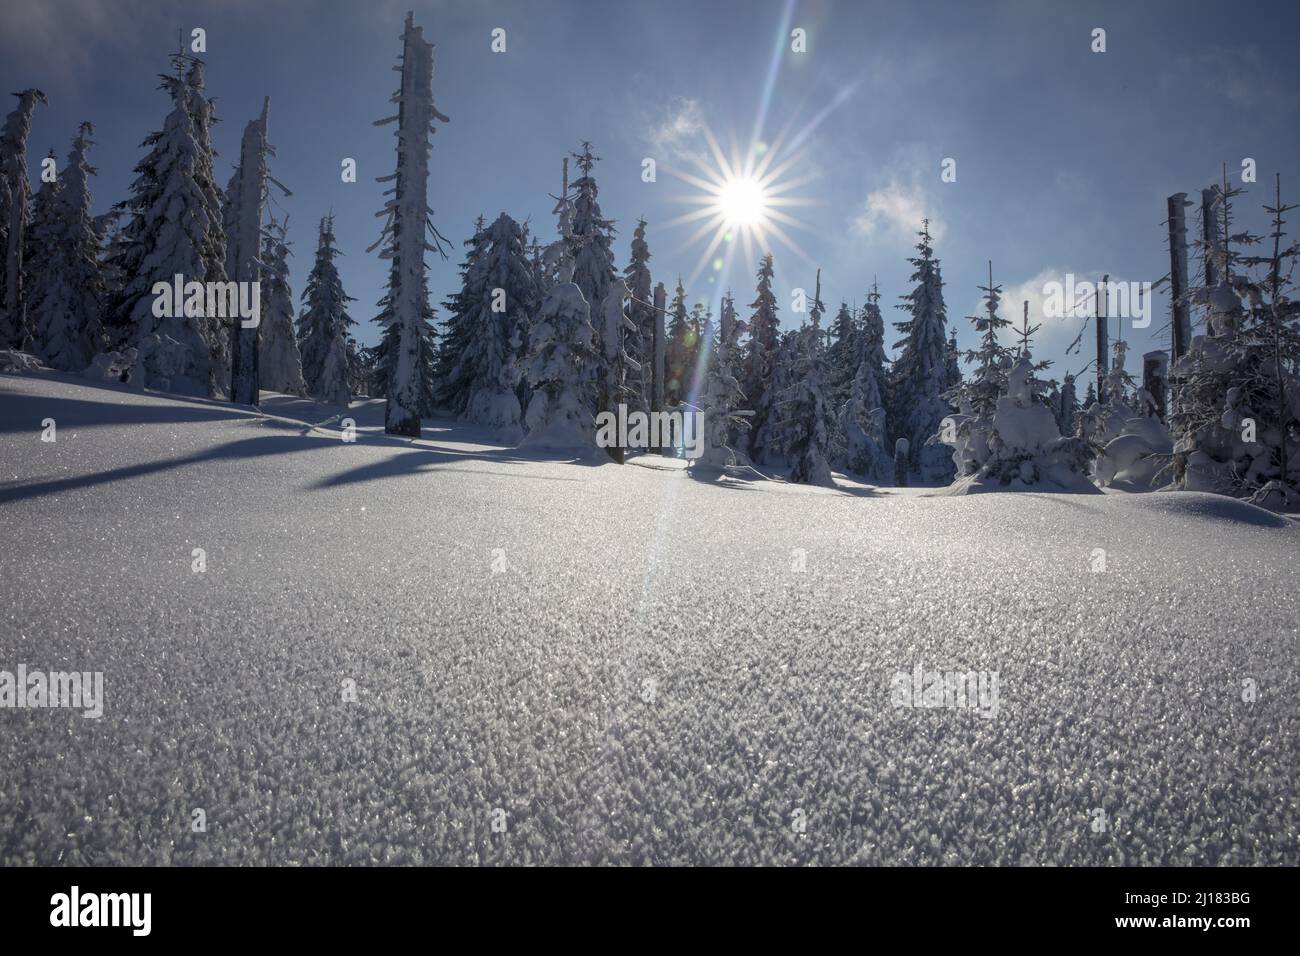 Sunstar leuchtet auf dem Bavarias Winter Wonderland am Mount Lusen mit Bäumen und Feldern, die von einer schweren weißen Schneelast bedeckt sind, die das Sonnenlicht reflektiert Stockfoto